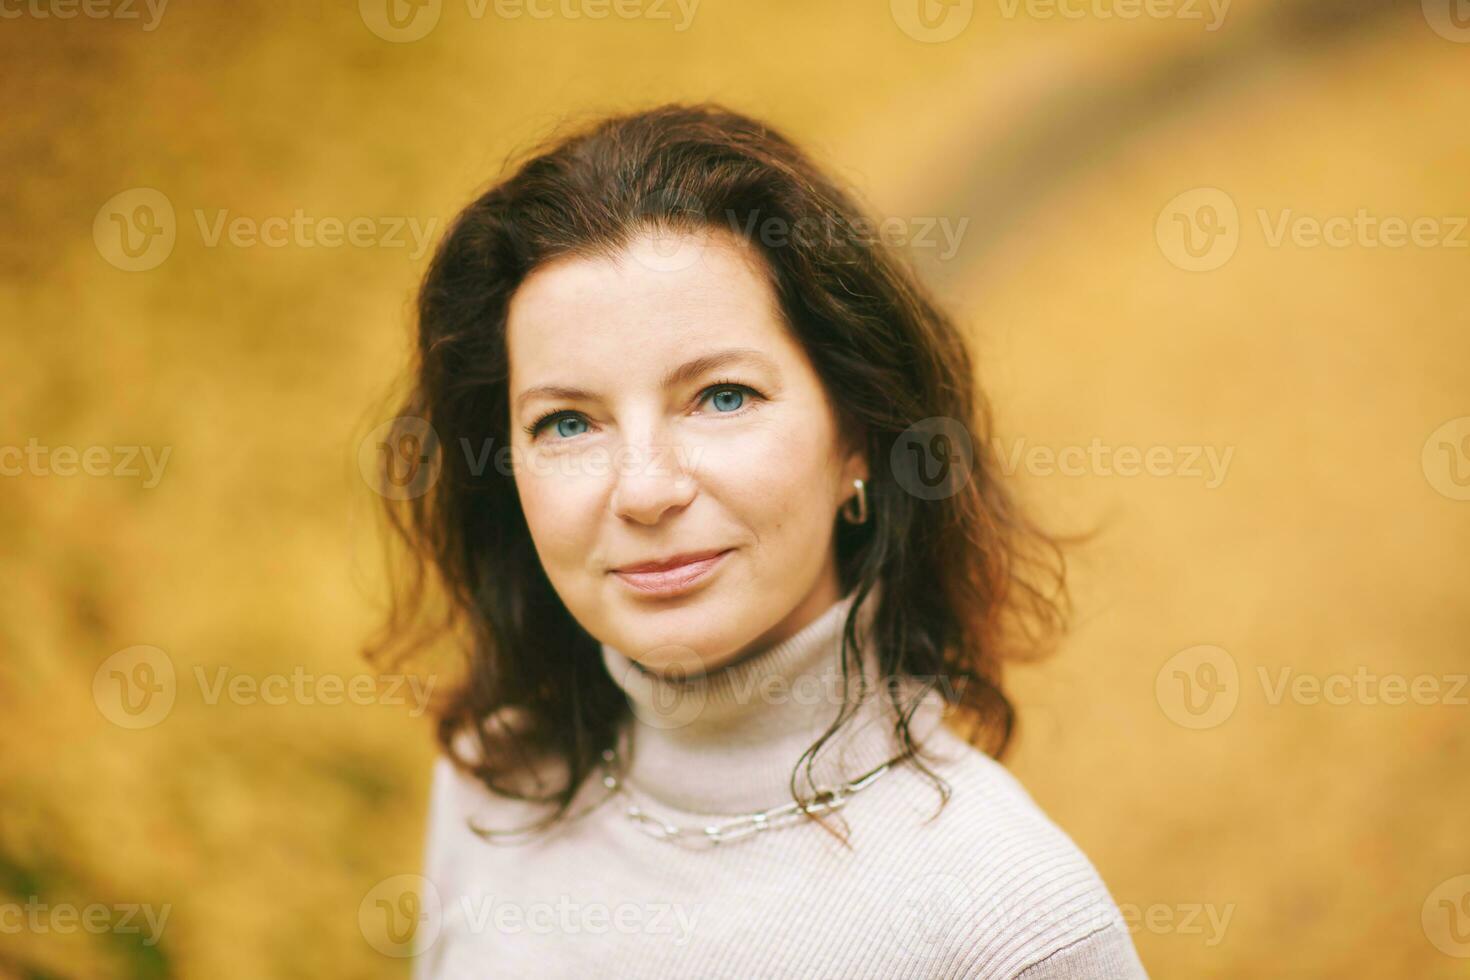 Herbst Porträt von schön reifen Frau, entspannend im golden fallen Park foto